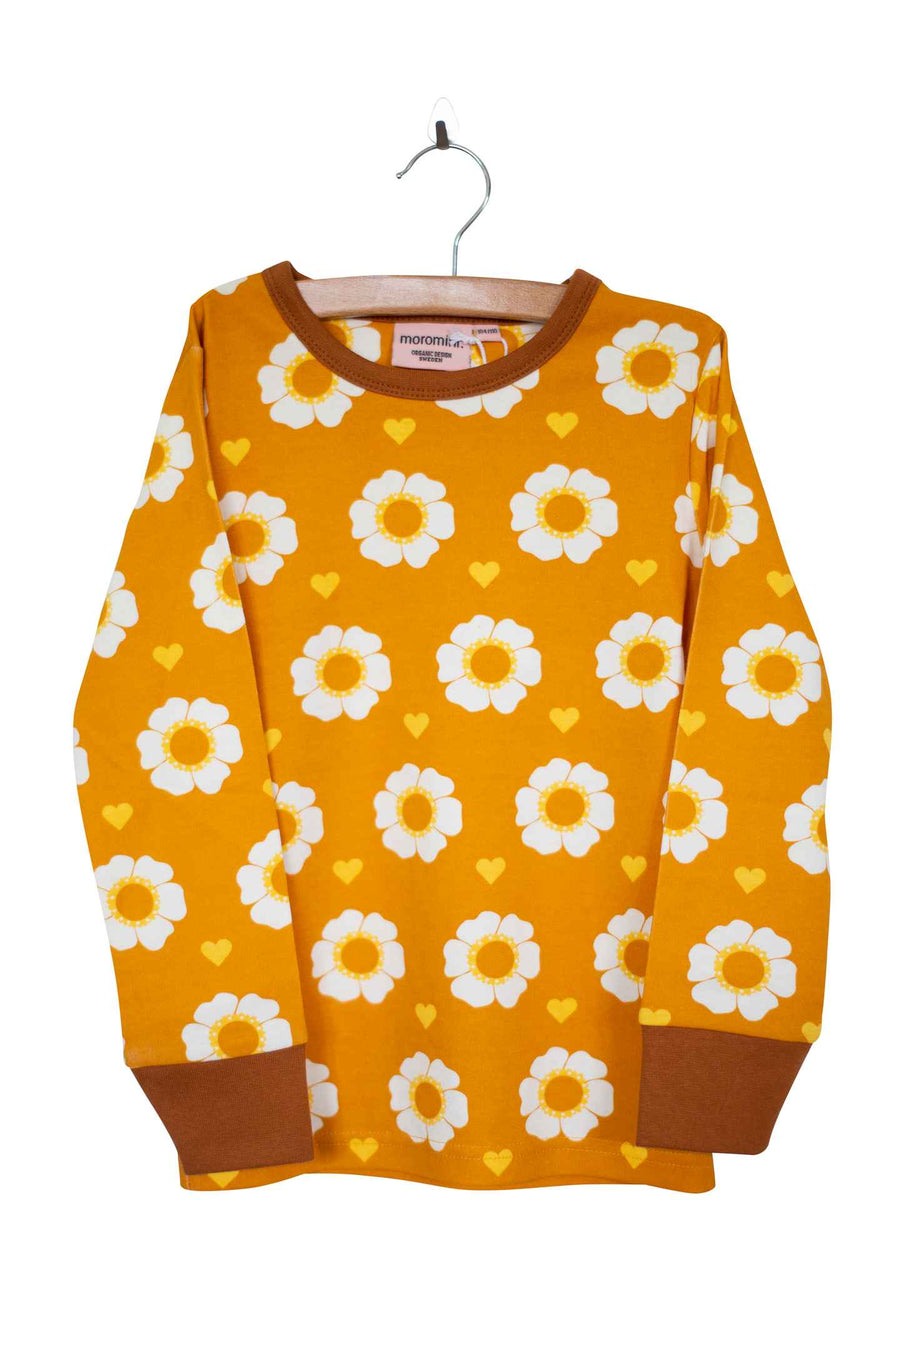 Moromini Flower Retro Shirt